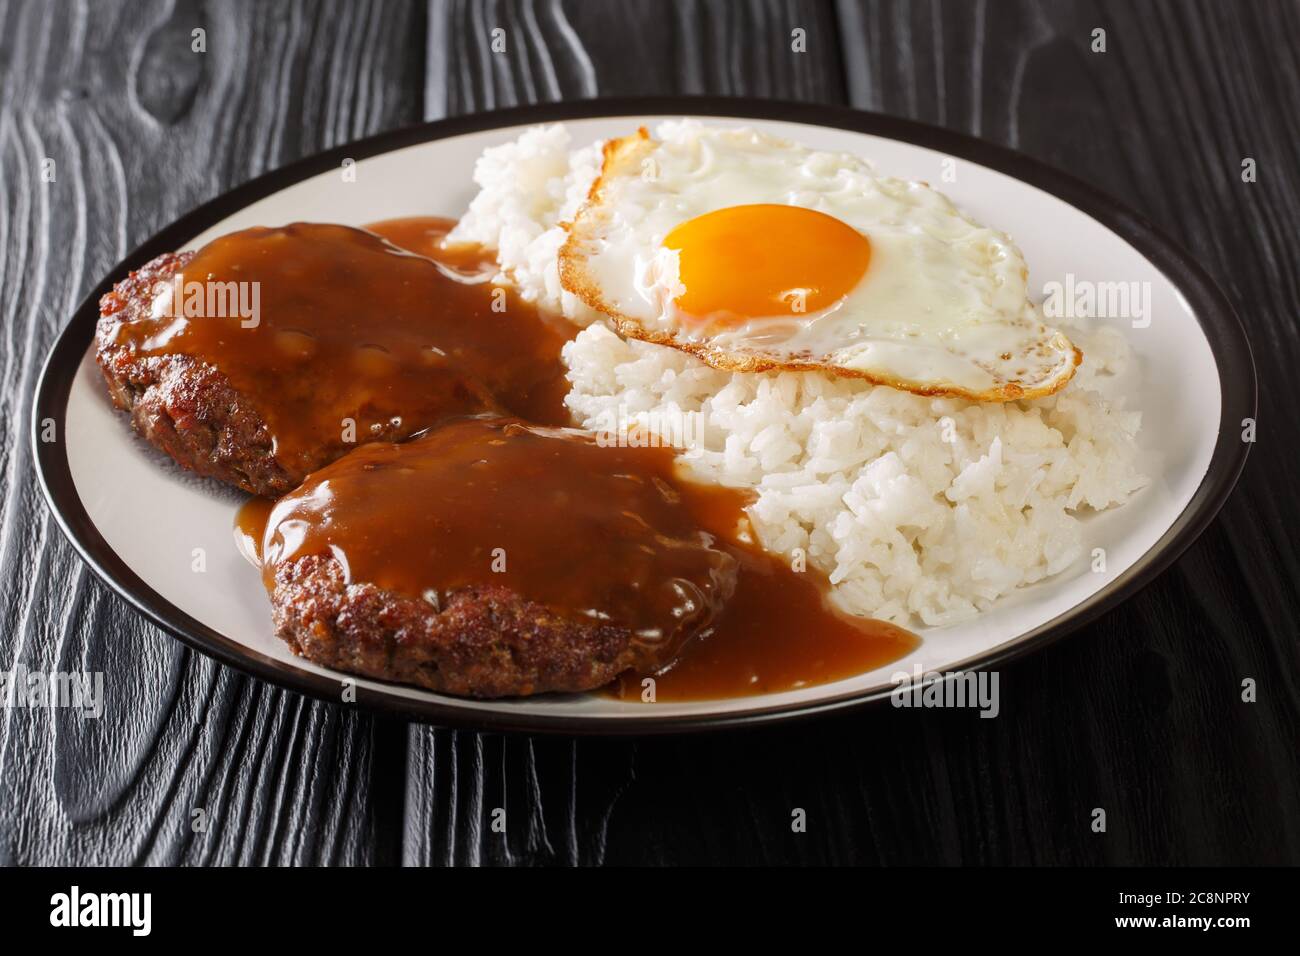 Il Loco moco è una cucina hawaiana preparata con riso bianco con un polpettine di hamburger, uovo con il lato soleggiato in alto e sugo di carne marrone da vicino su un piatto sul tavolo. Foto Stock